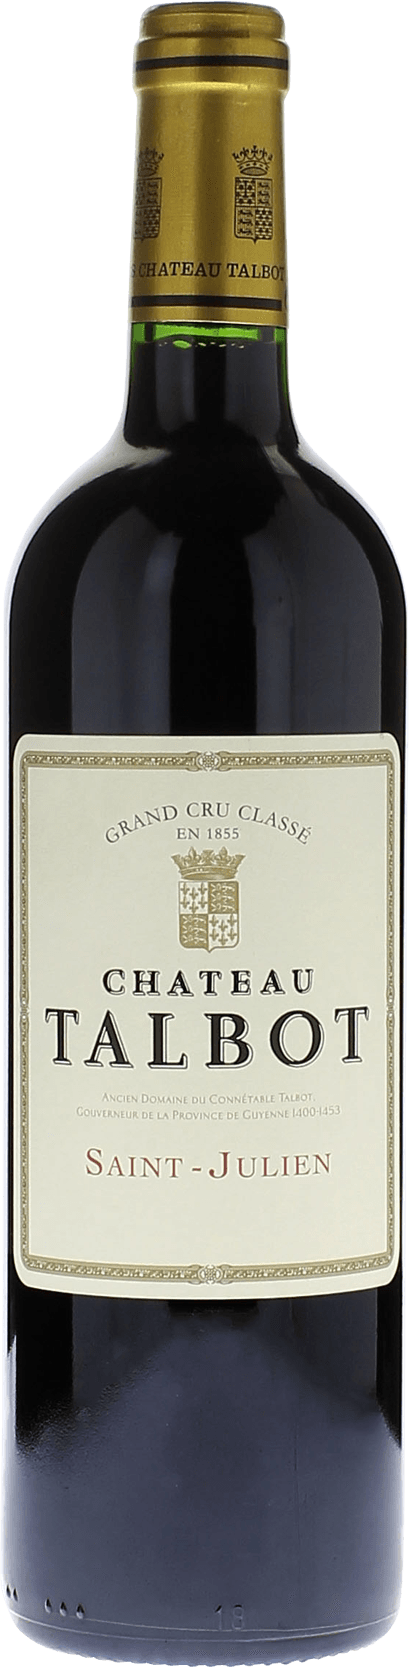 Talbot 1990 4me Grand cru class Saint-Julien, Bordeaux rouge